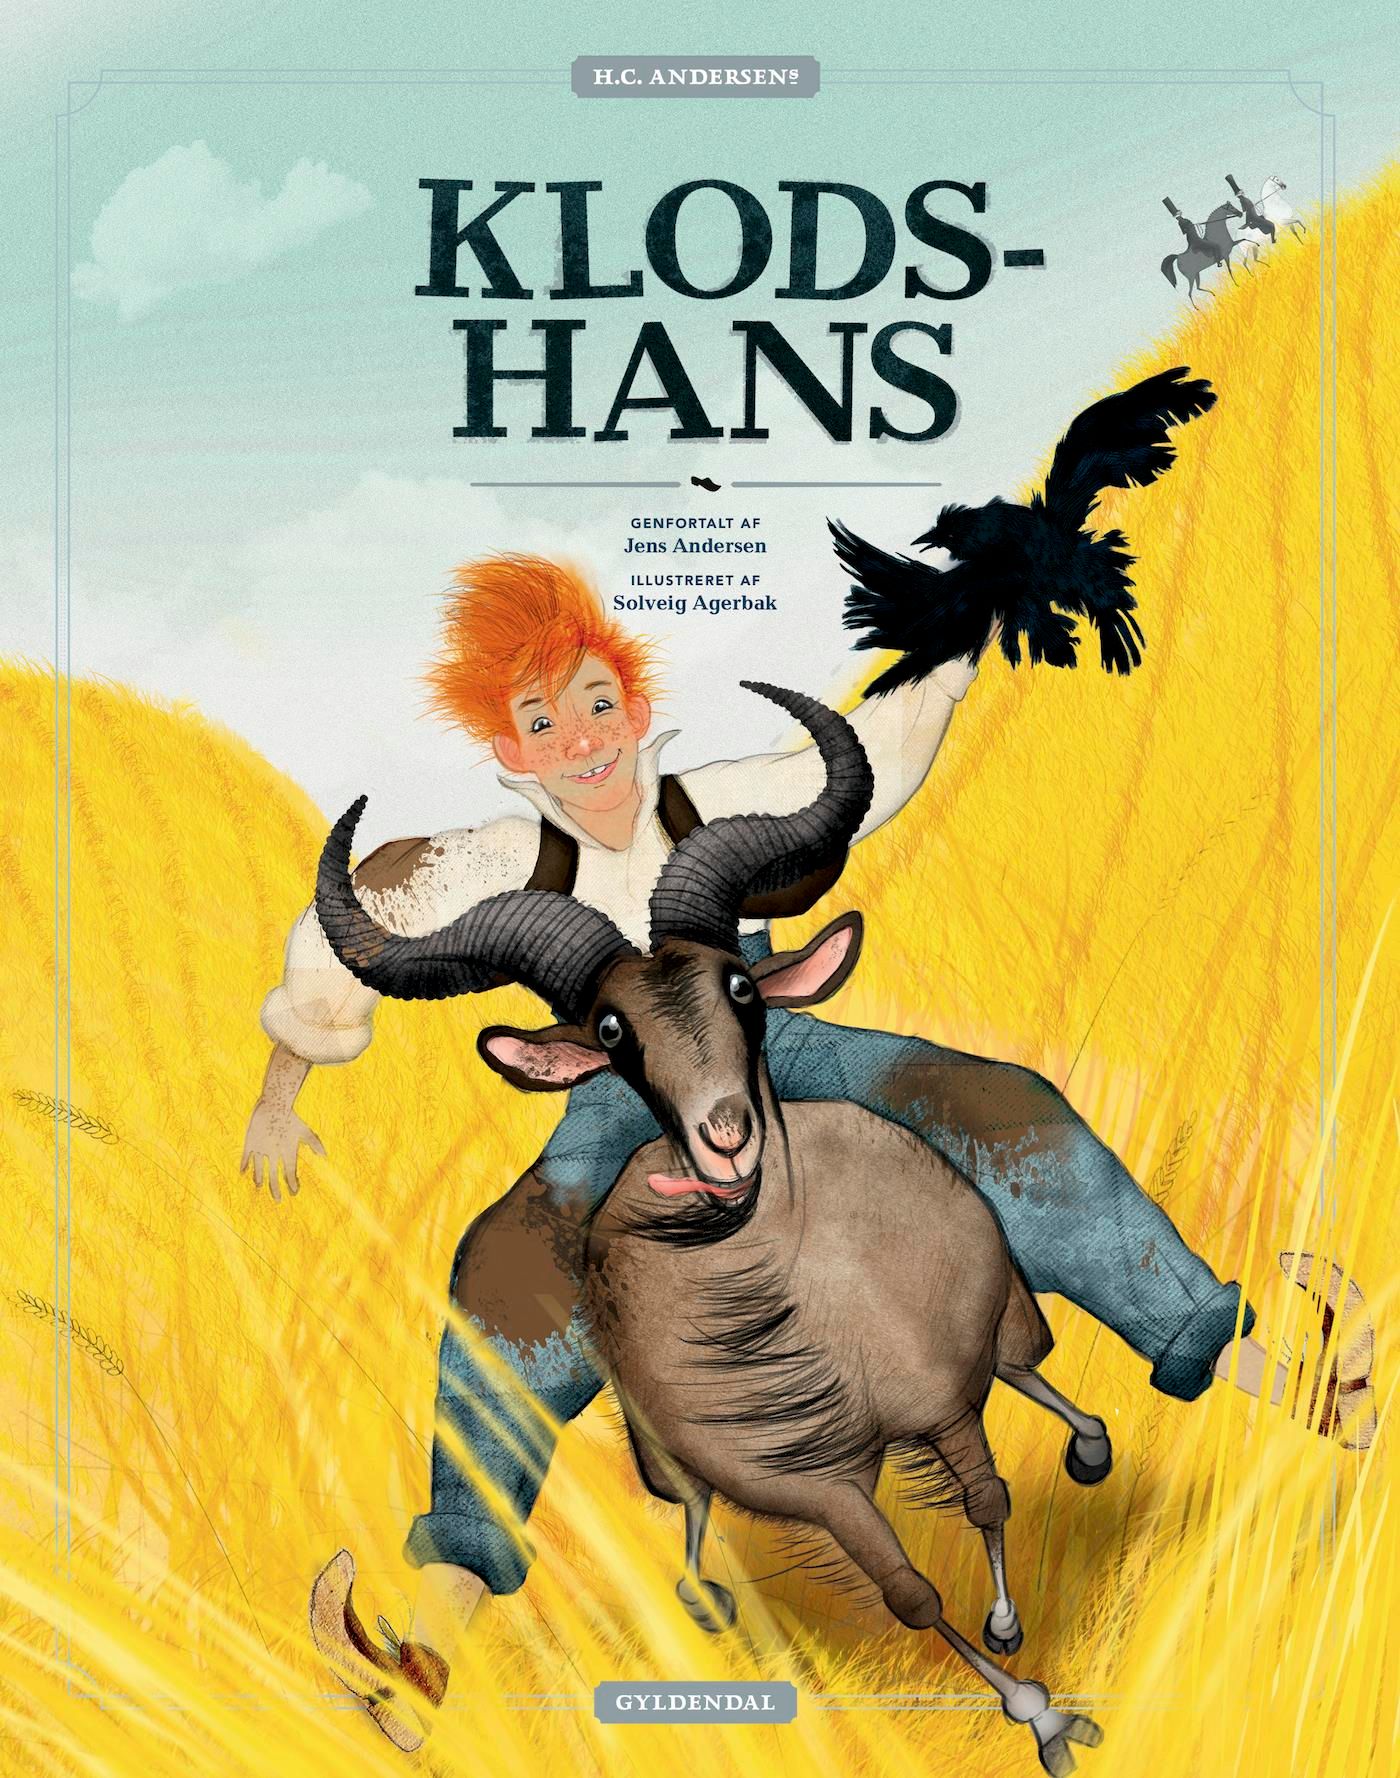 H.C. Andersens Klods-Hans - Lyt&læs, e-bog af Solveig Agerbak, Jens Andersen